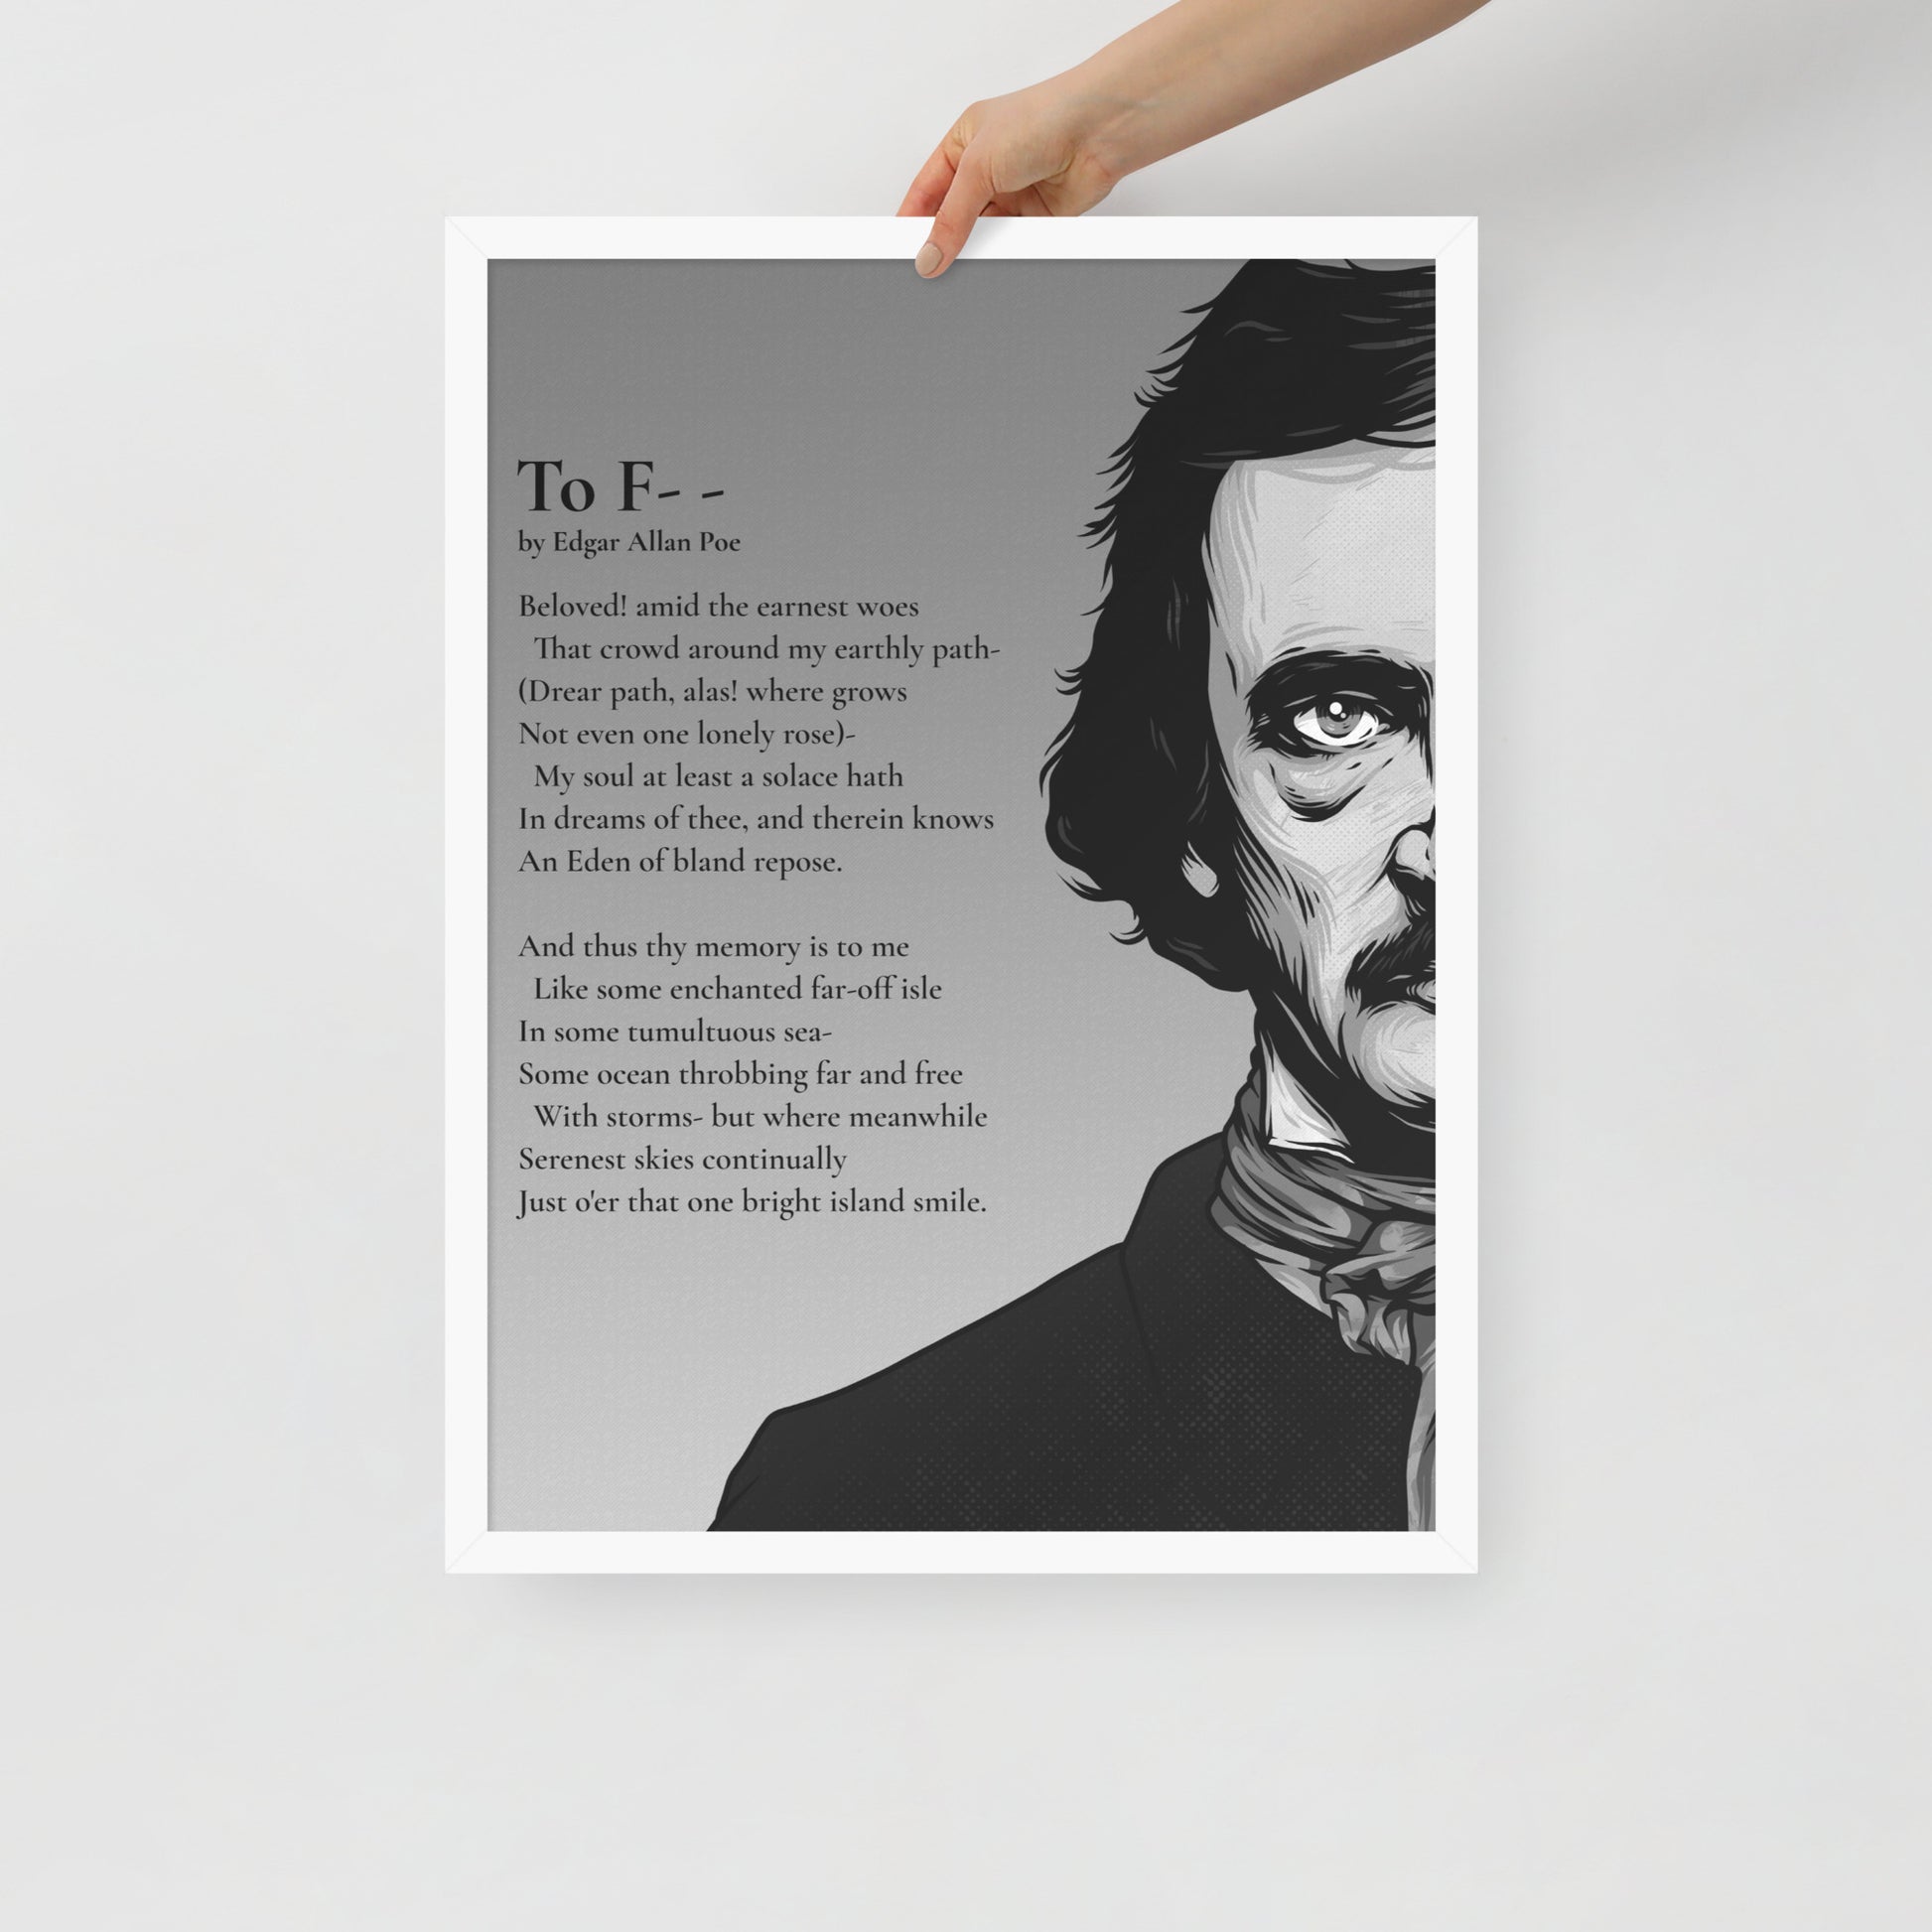 Edgar Allan Poe's 'To F--' Framed Matted Poster - 18 x 24 White Frame